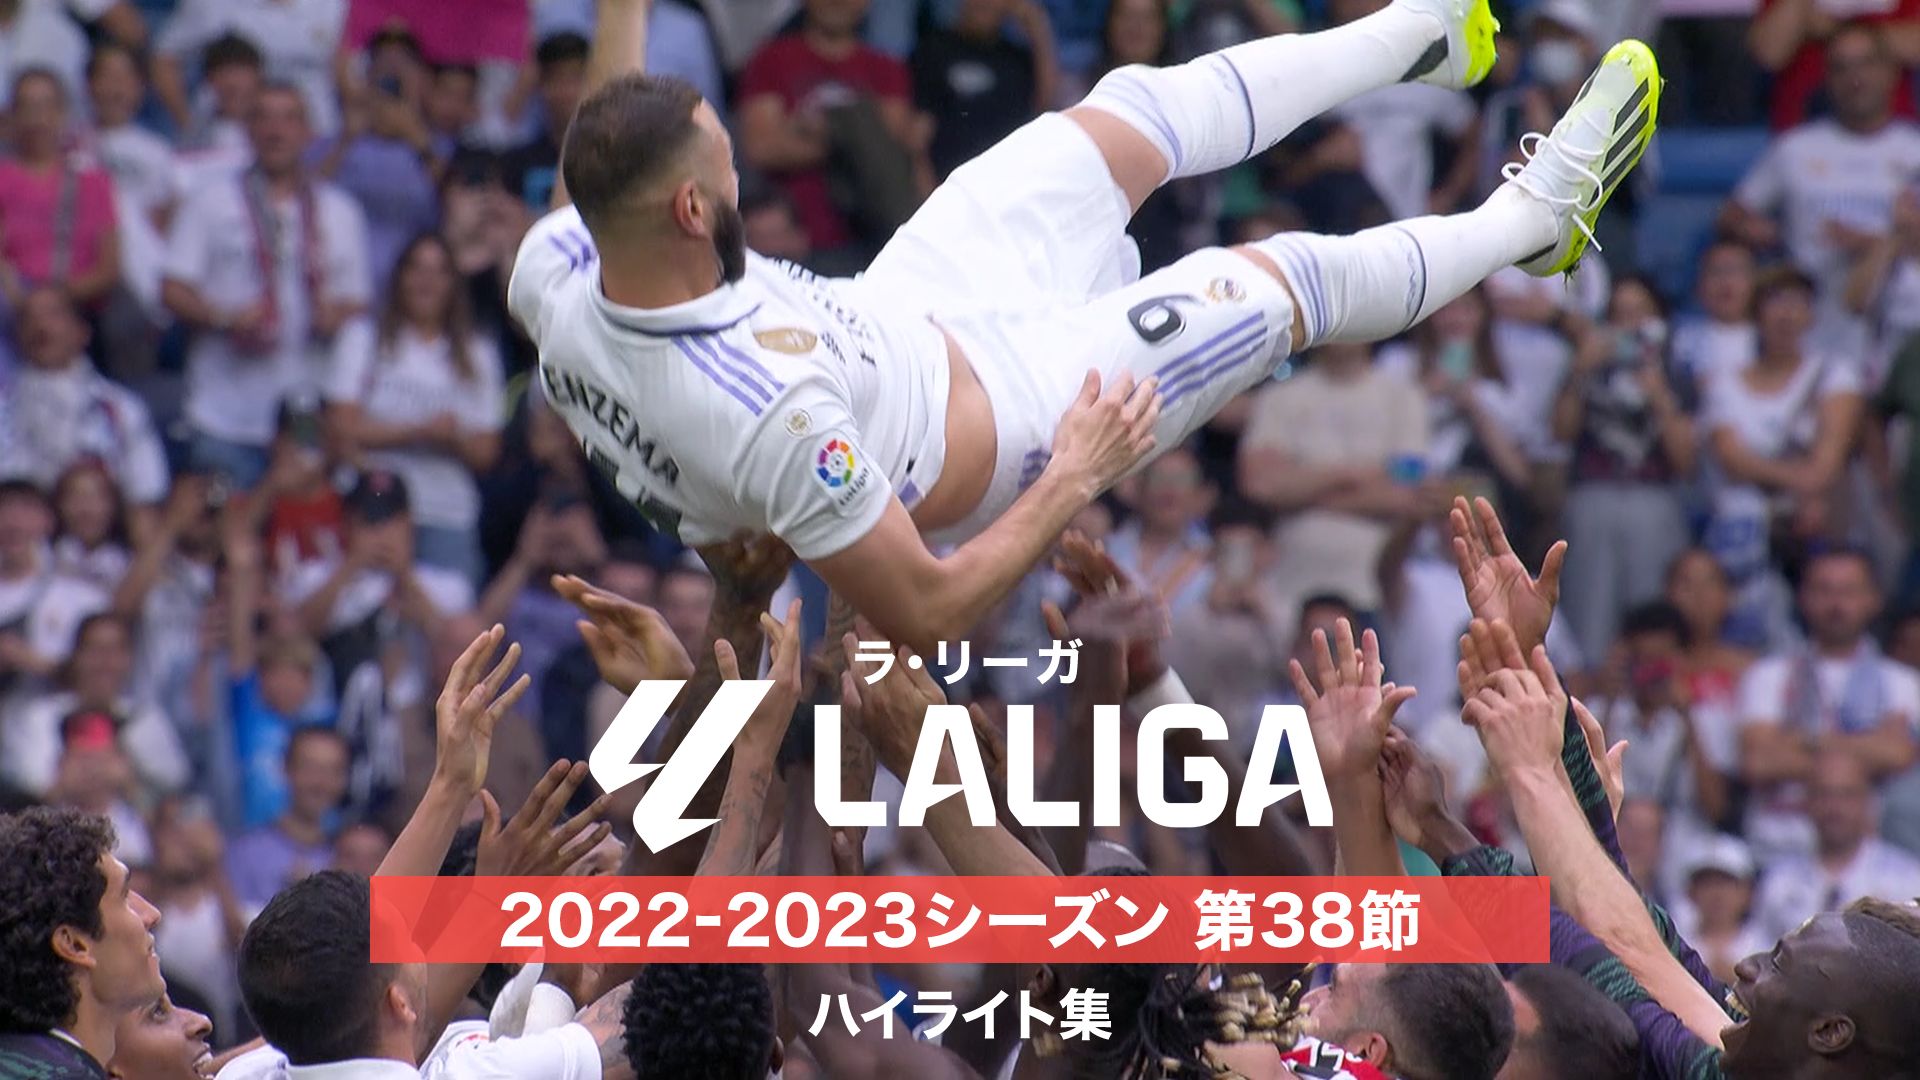 ラ・リーガ 2022-2023シーズン 第38節 ハイライト集